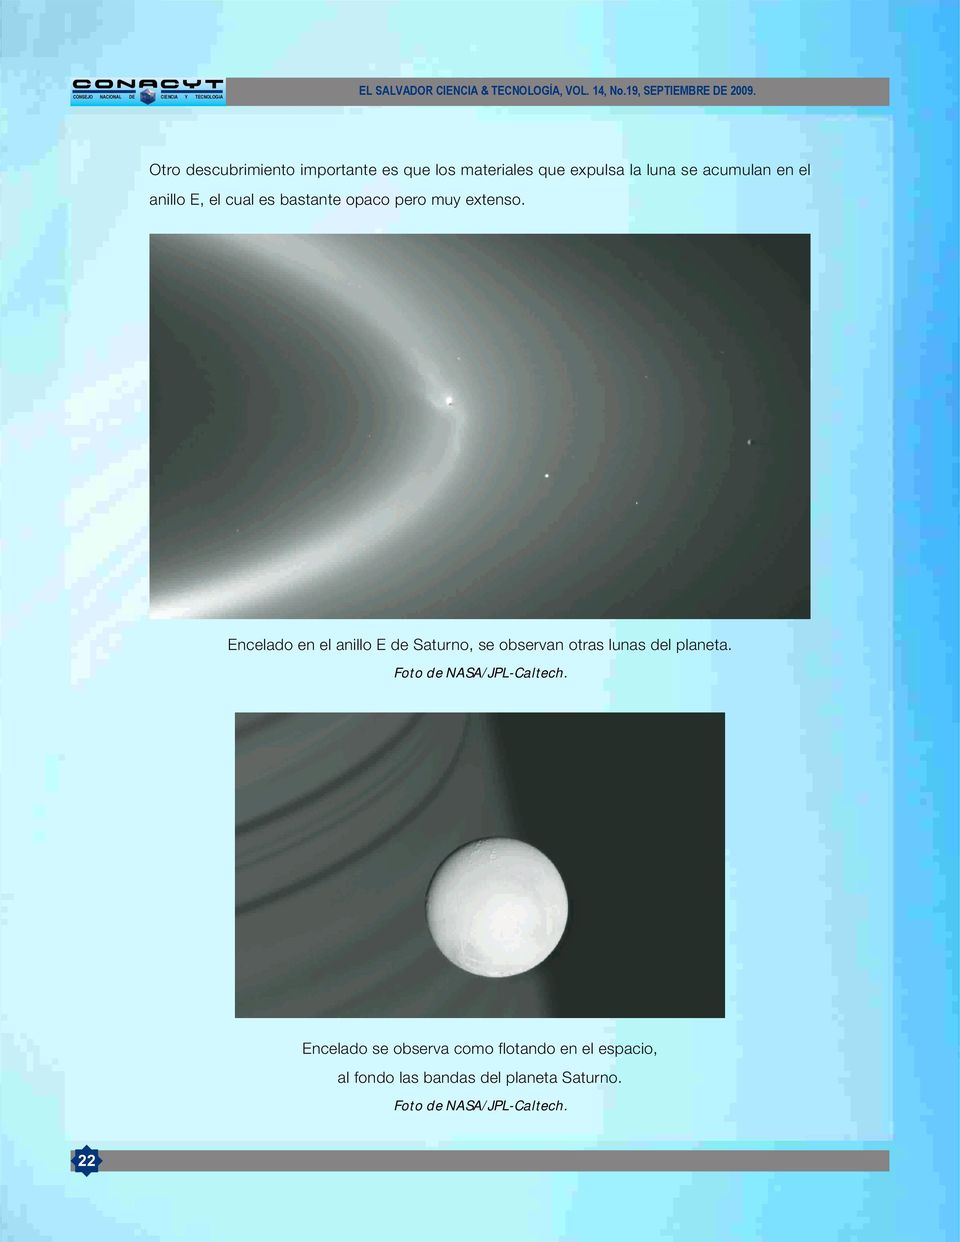 Encelado en el anillo E de Saturno, se observan otras lunas del planeta.